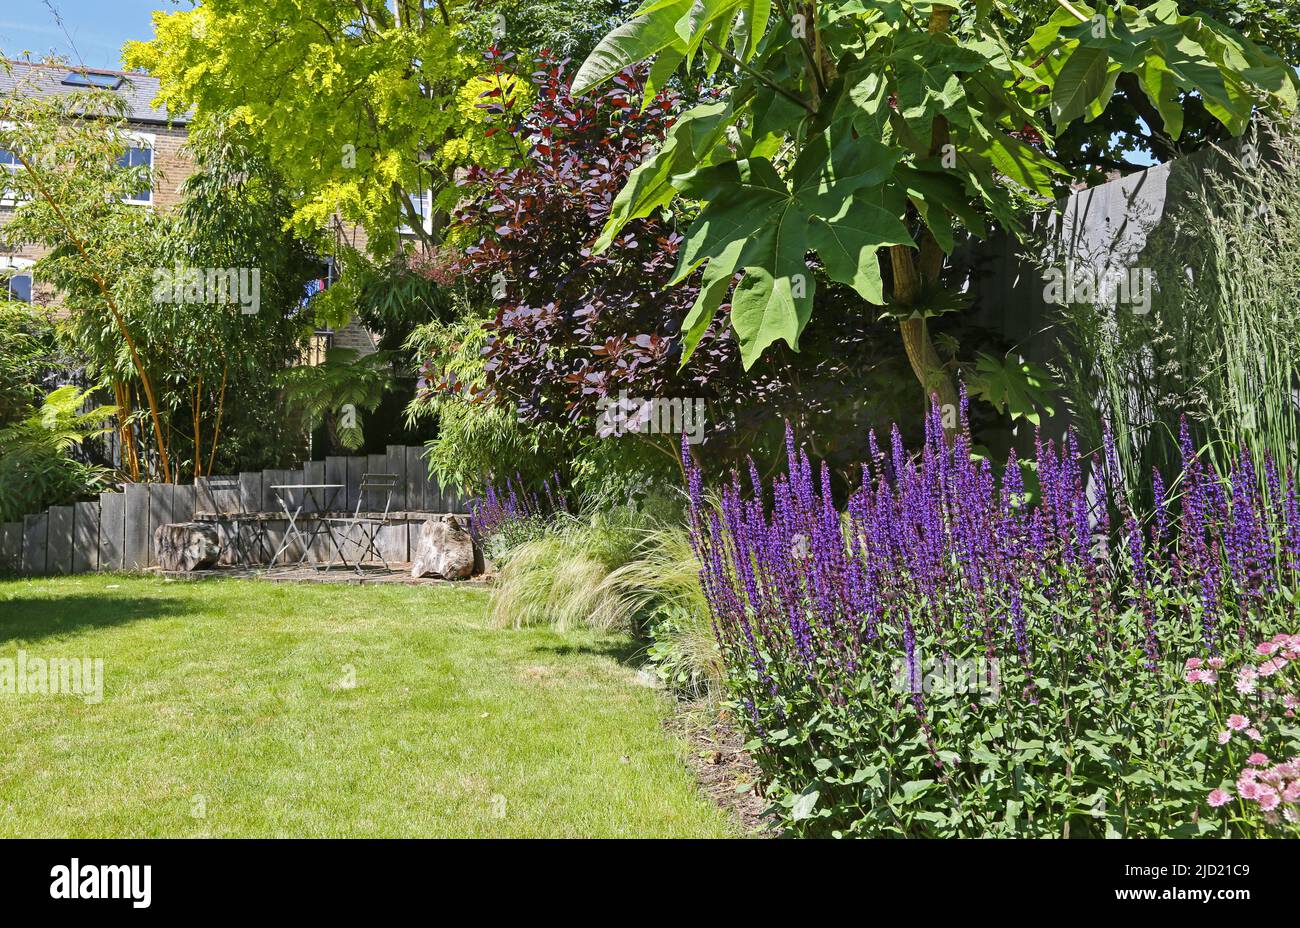 Un jardin à l'arrière rempli de plantes dans le sud de Londres, Royaume-Uni. Affiche un coin salon en bois et du bambou (à gauche), de la pelouse, des herbes ornementales et de la Salvia Nemorosa pourpre. Banque D'Images